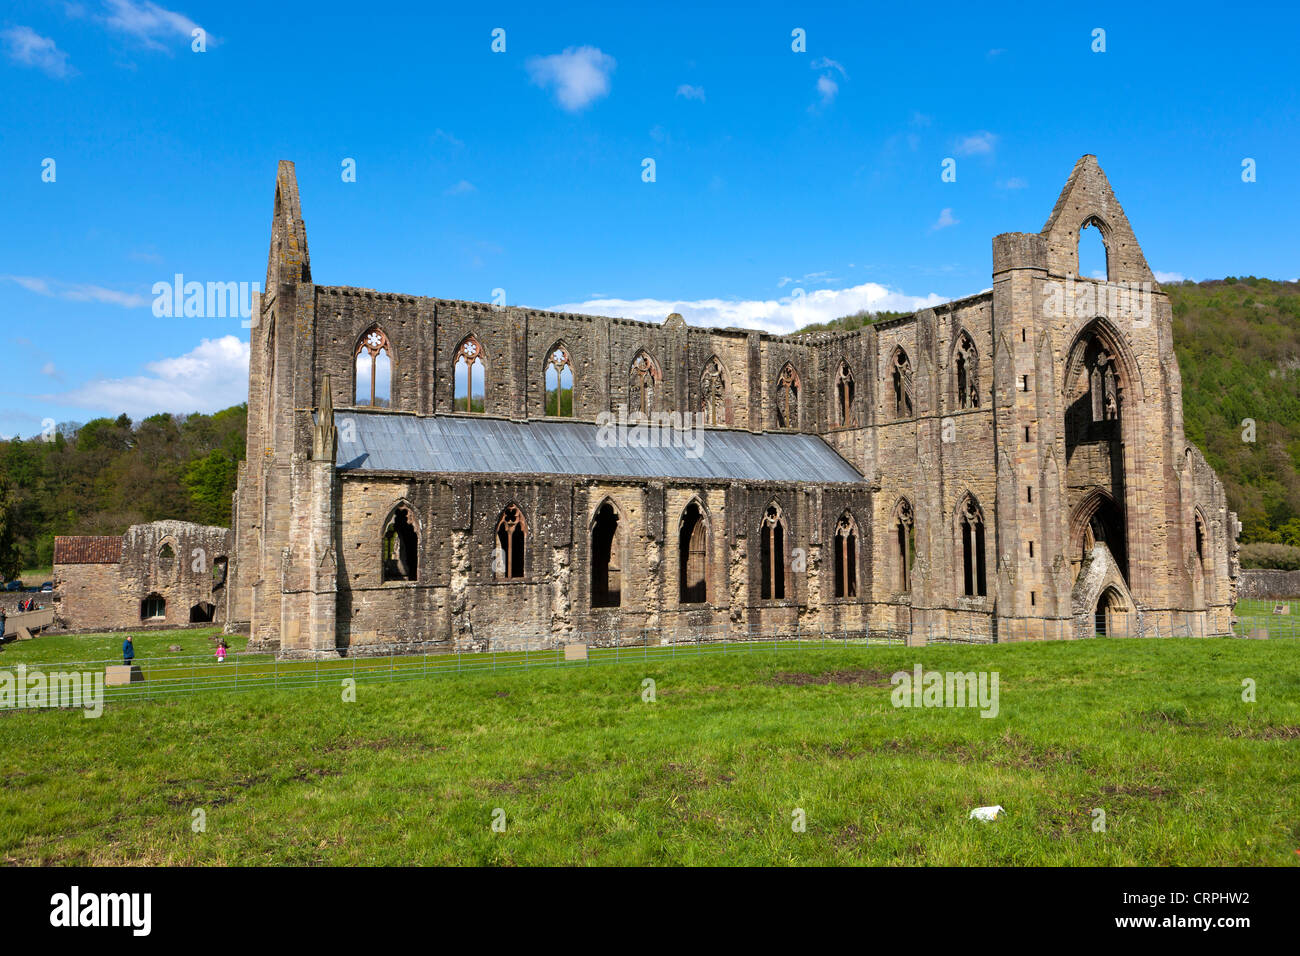 Die Ruinen von Tintern Abbey, ein Zisterzienser-Abtei von Walter de Clare, Lord von Chepstow im 12. Jahrhundert gegründet. Stockfoto